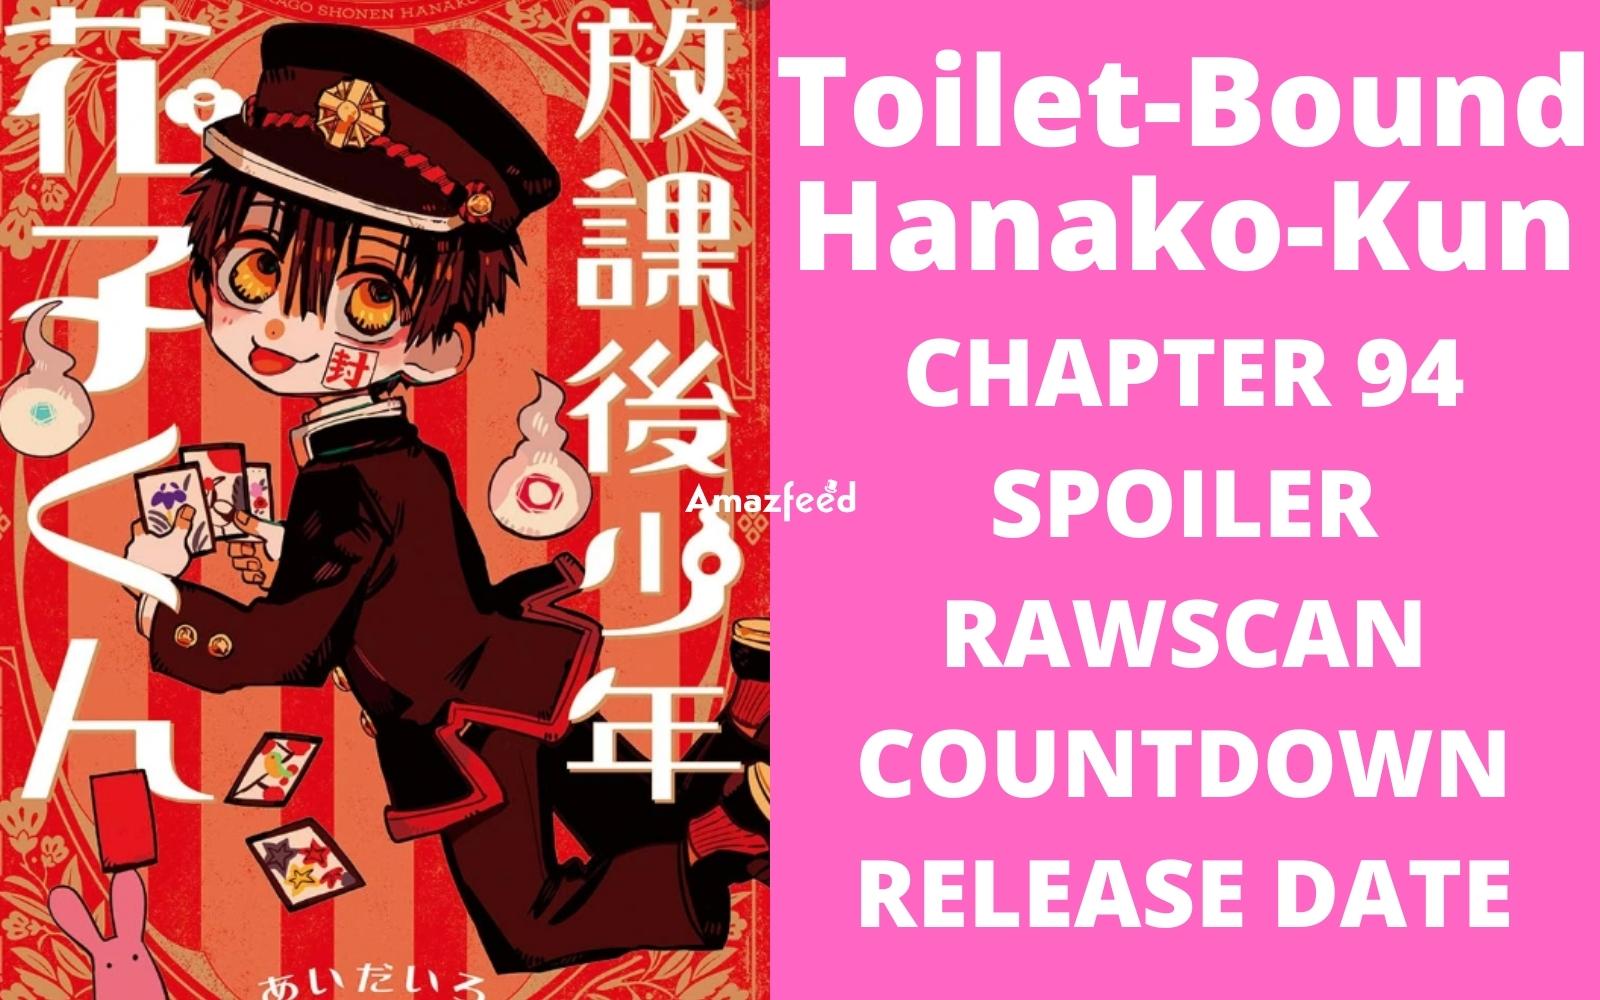 Toilet-Bound Hanako-Kun Chapter 94 Spoiler, Release Date